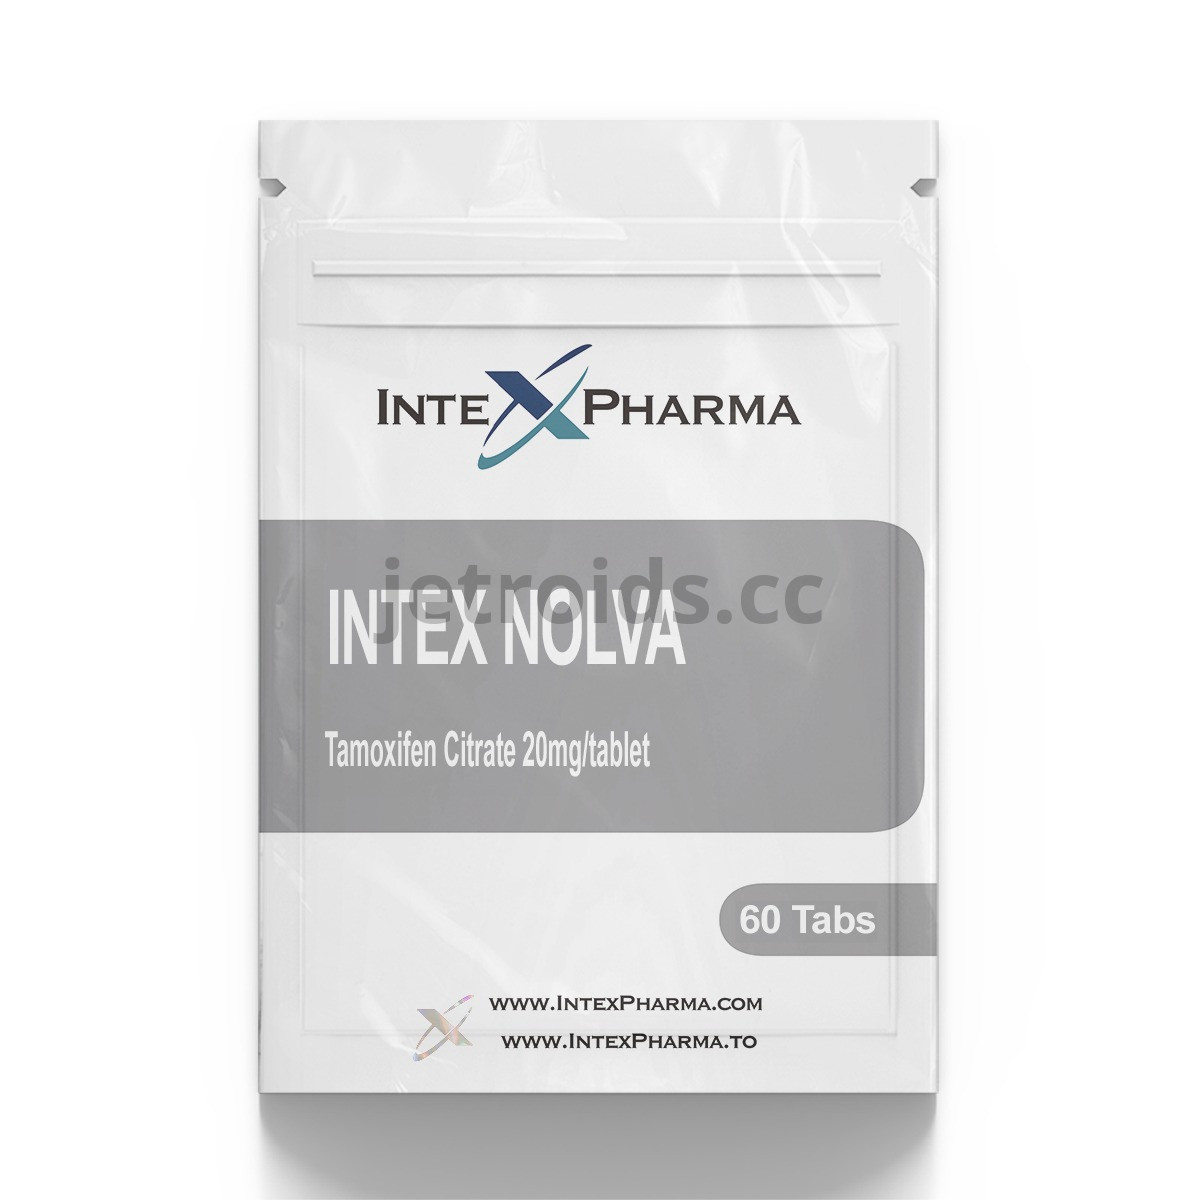 IntexPharma Intex Nolva Product Info